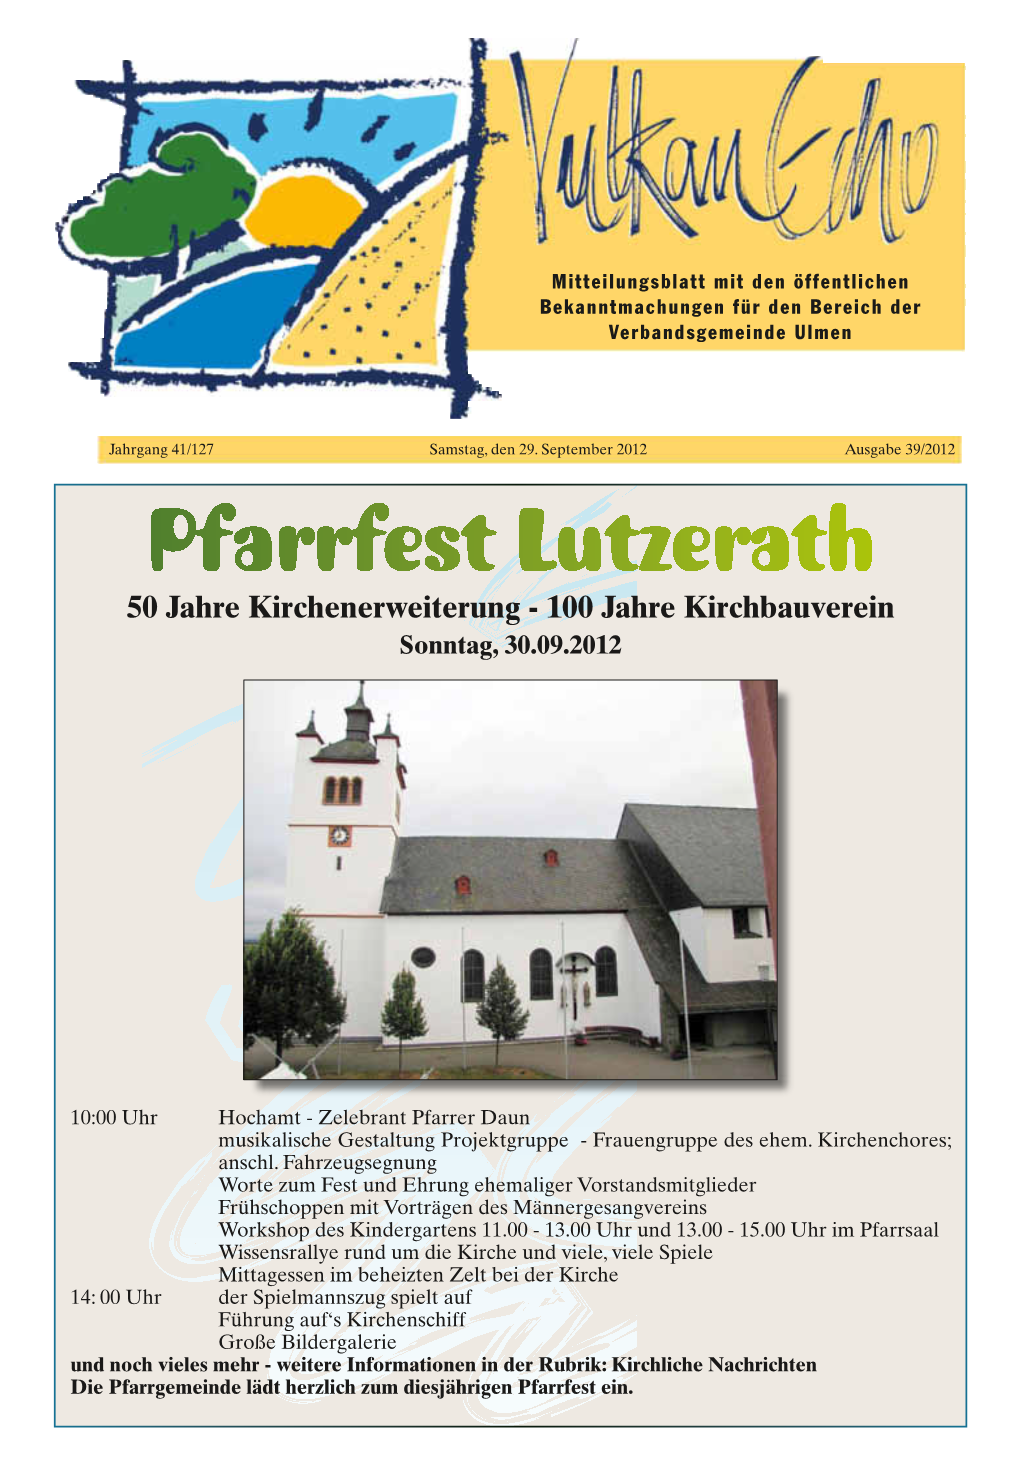 Pfarrfest Lutzerath 50 Jahre Kirchenerweiterung - 100 Jahre Kirchbauverein Sonntag, 30.09.2012